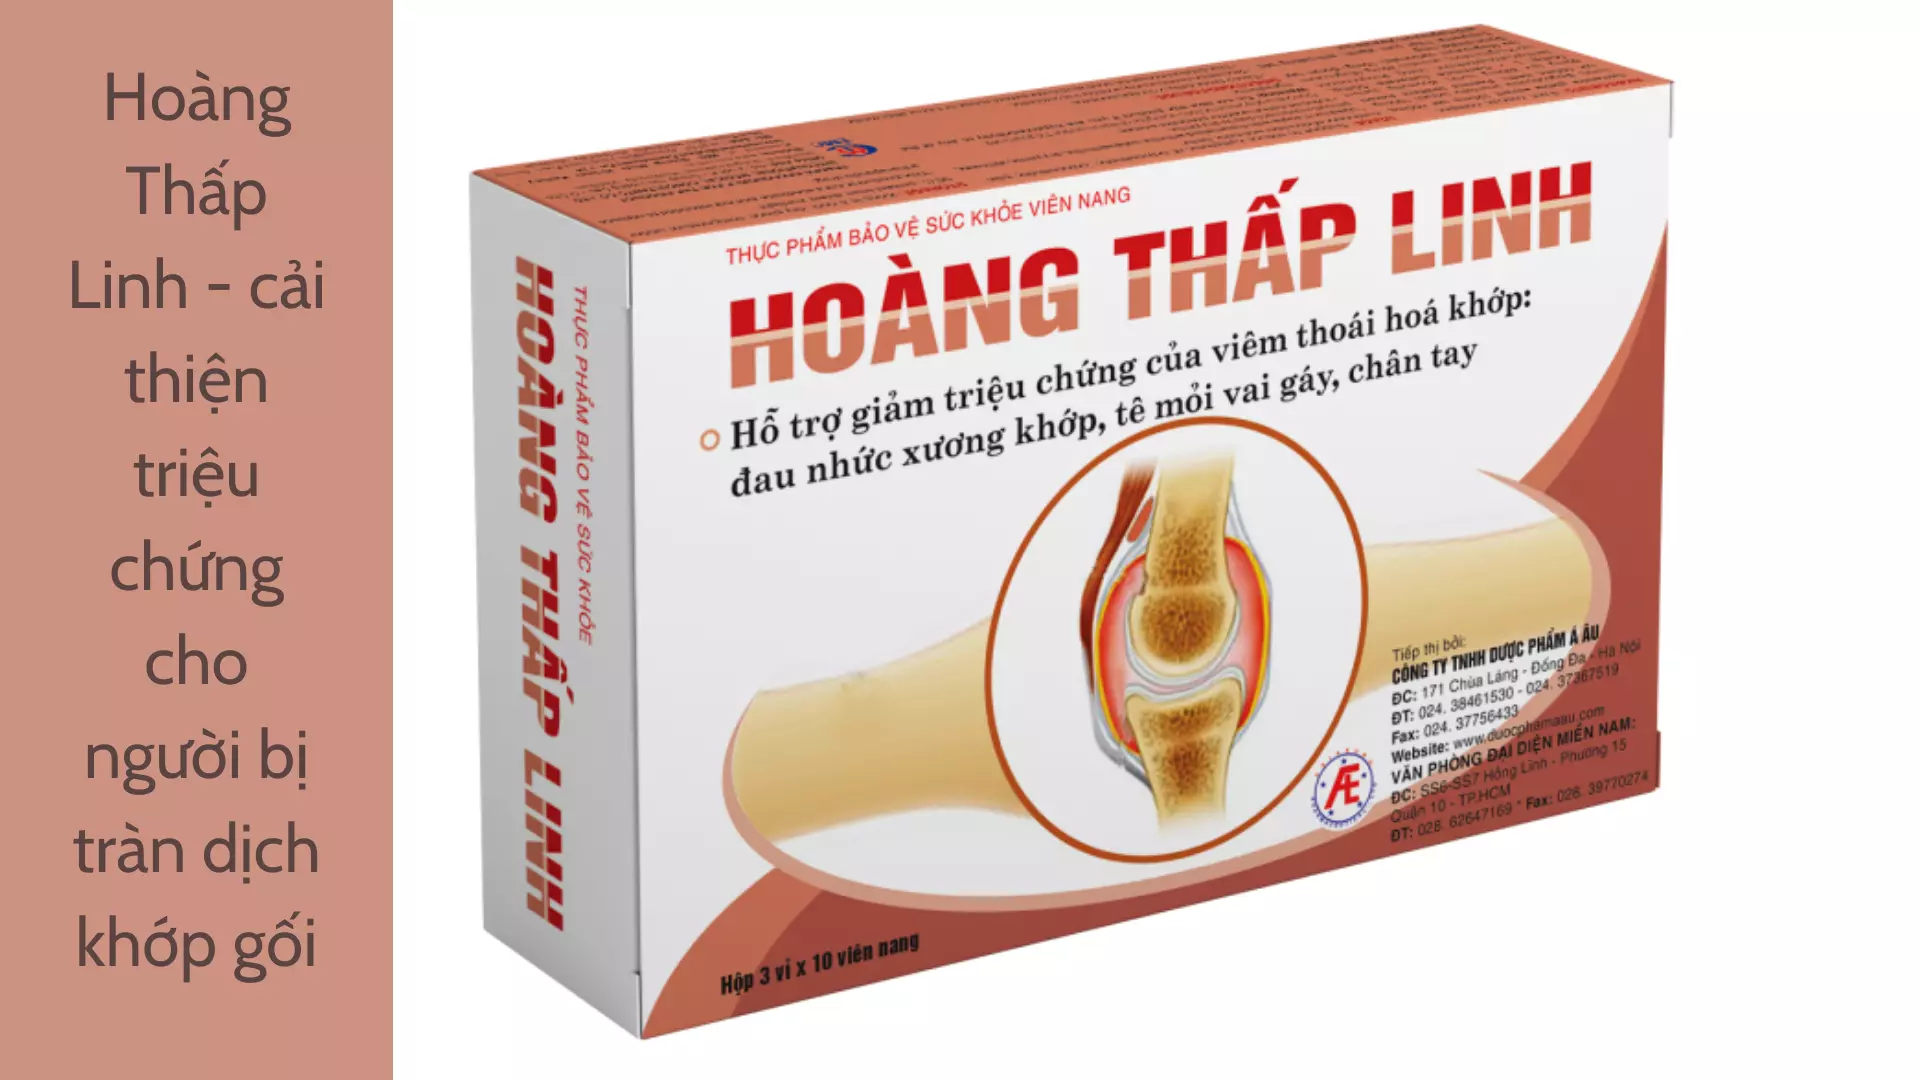 Hoang-Thap-Linh-San-pham-giup-cai-thien-trieu-chung-cho-nguoi-bi-tran-dich-khop-goi